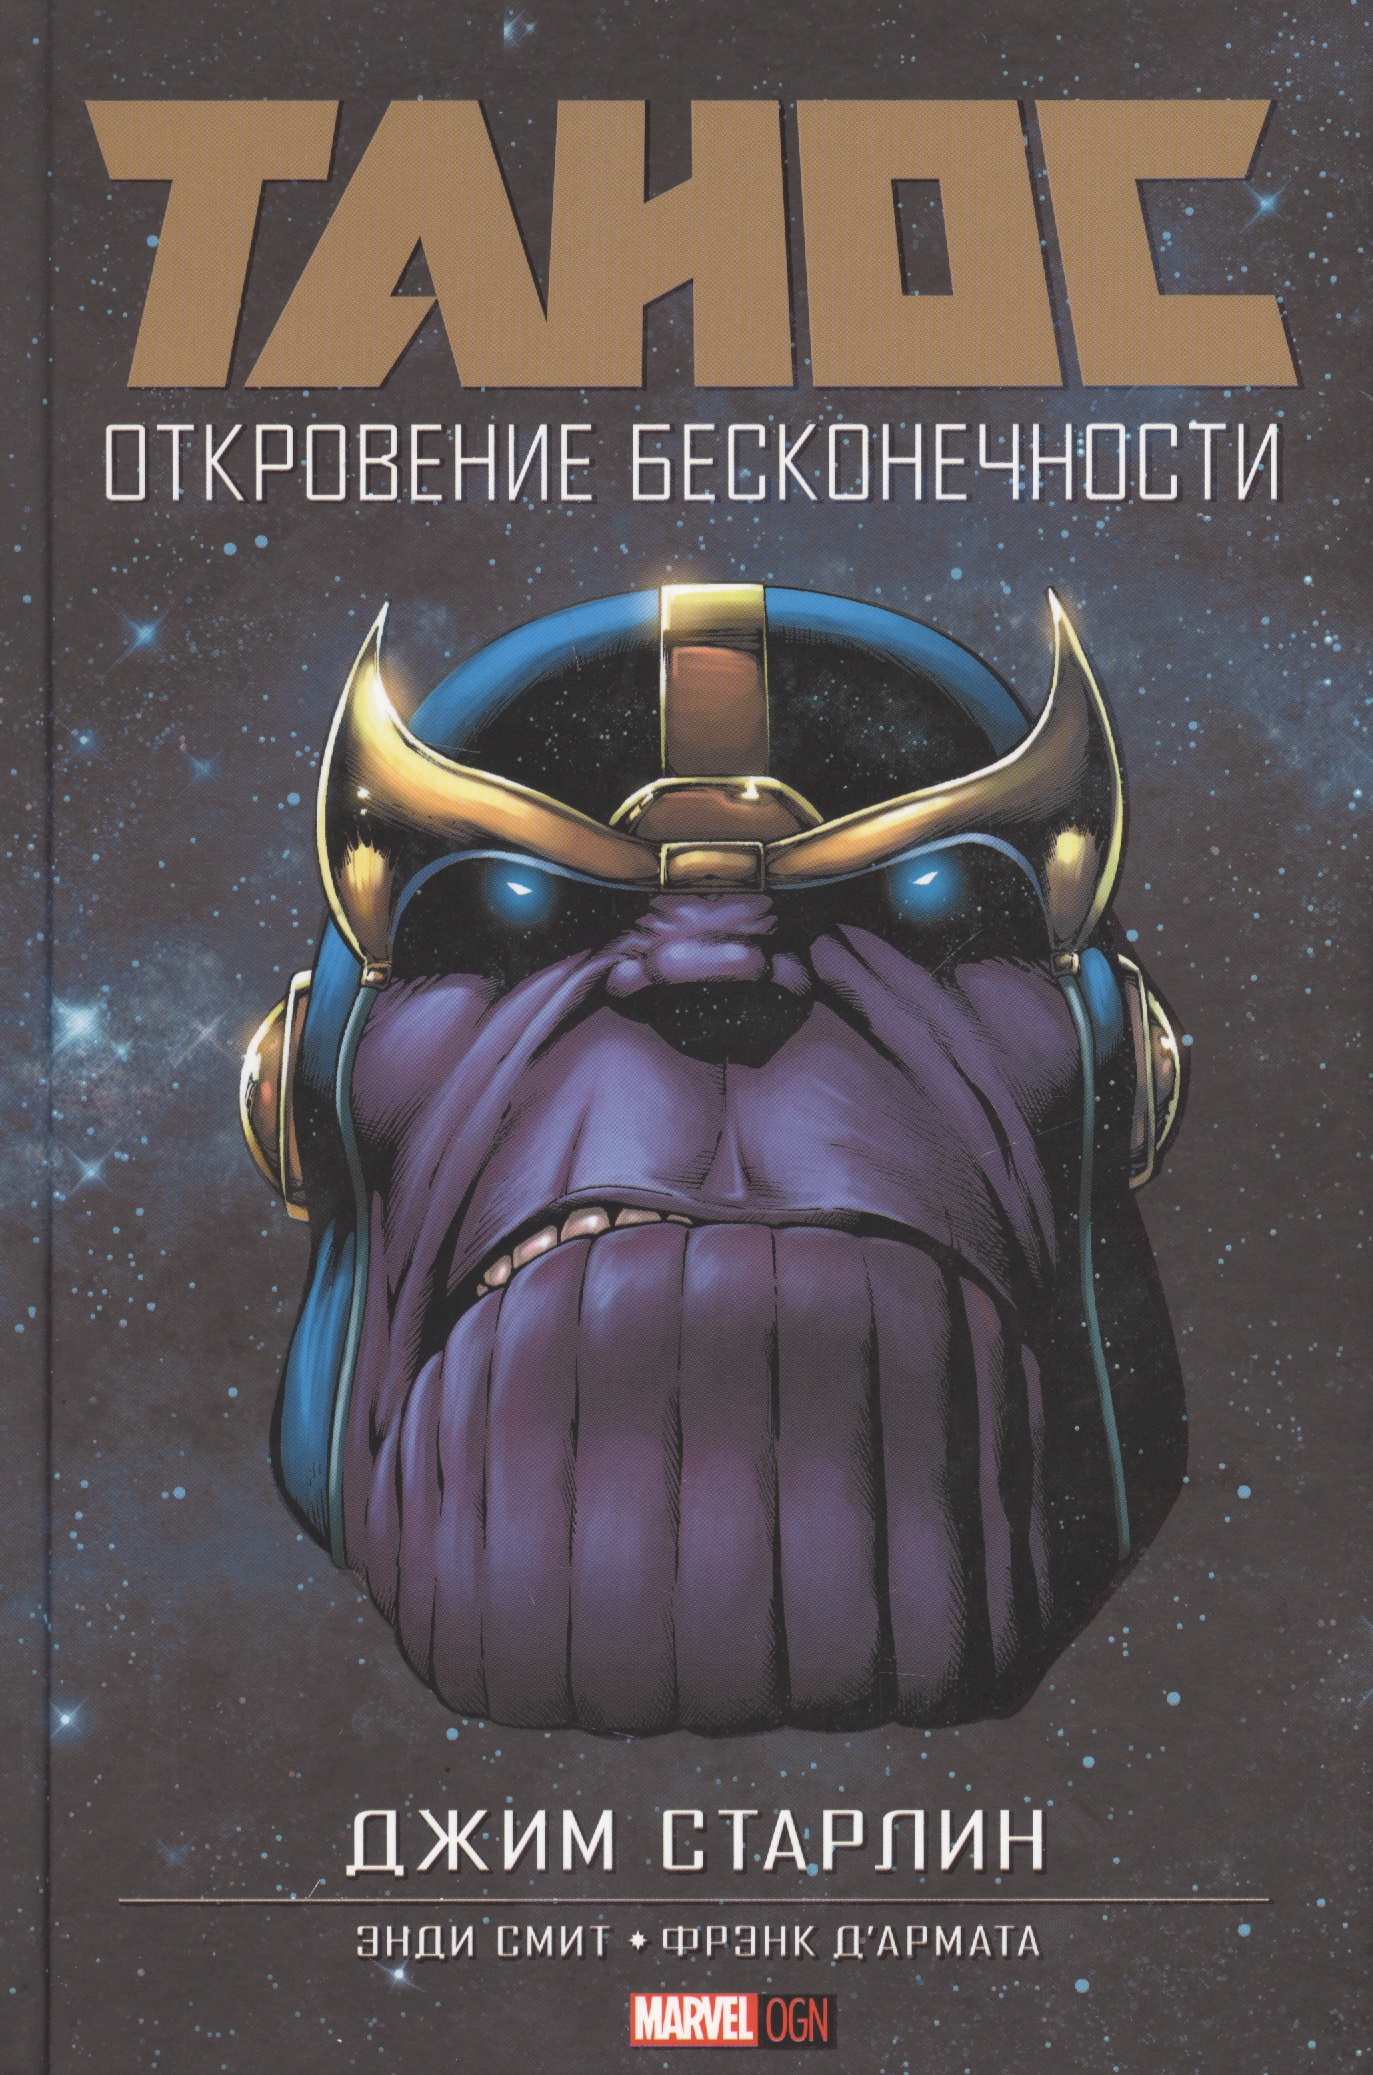 Комикс Танос Откровение Бесконечности (MarvelOGN) Старлин старлин джим танос откровение бесконечности